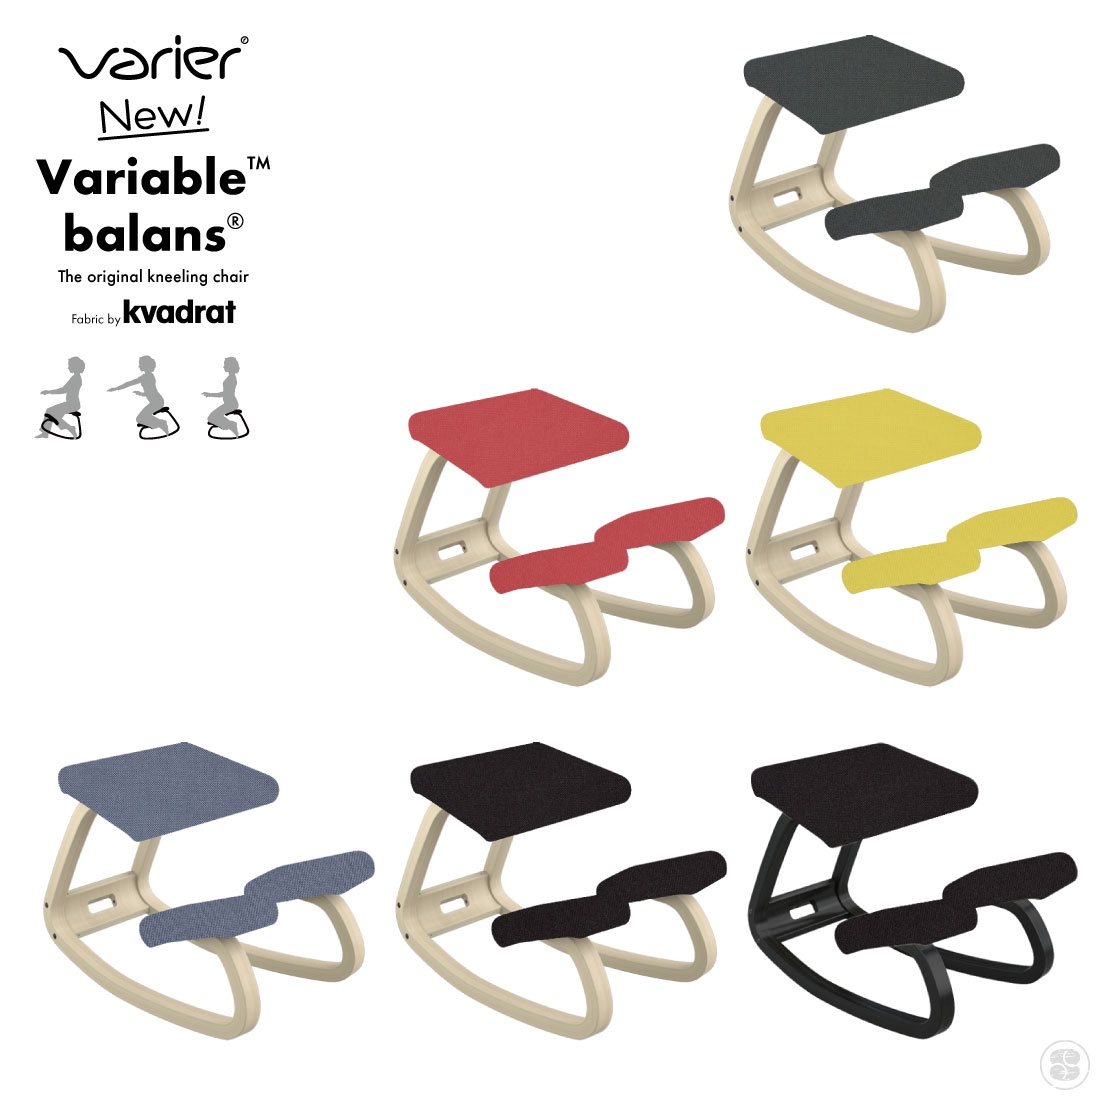 Varier/バリエール　New Variable Balans Kvadrat社のReviveを使用してリニューアルしました。 バリアブルバランスは、体の動きを促すと共に、個々の動きに対する反応力を高めます。 持続する動きの中での体と椅子の関係及び作用と反作用の仕組みにより、体と心にエネルギーと活力が生み出されます。 バランスチェアとして最初にデザインされた椅子「バリアブル」は、バランスシリーズの原点となる一脚です。 約30年前にデザインされたとは思えない斬新さを、今も保ち続けています。 素材 木部　ブナ材ラッカー塗装　　張地　リサイクルポリエステル100％ 耐加重 110kg ※ノルウェーの検査機関で120kgの負荷をかけた検査をクリアしていますが日本国内基準を保証するものではありません。 原産国 ノルウェー デザイナー ピーター・オプスヴィック イメージ写真について イメージ写真には、該当商品以外の撮影小物なども写っておりますが、それらの小物は商品には含まれておりません。お間違いのないよう、ご注意くださいませ。 手工品の場合 商品がハンドメイドの場合、個体差が生じる場合がございますが、いずれも良品です。色や形、2つとないハンドメイドの良さをお楽しみください。